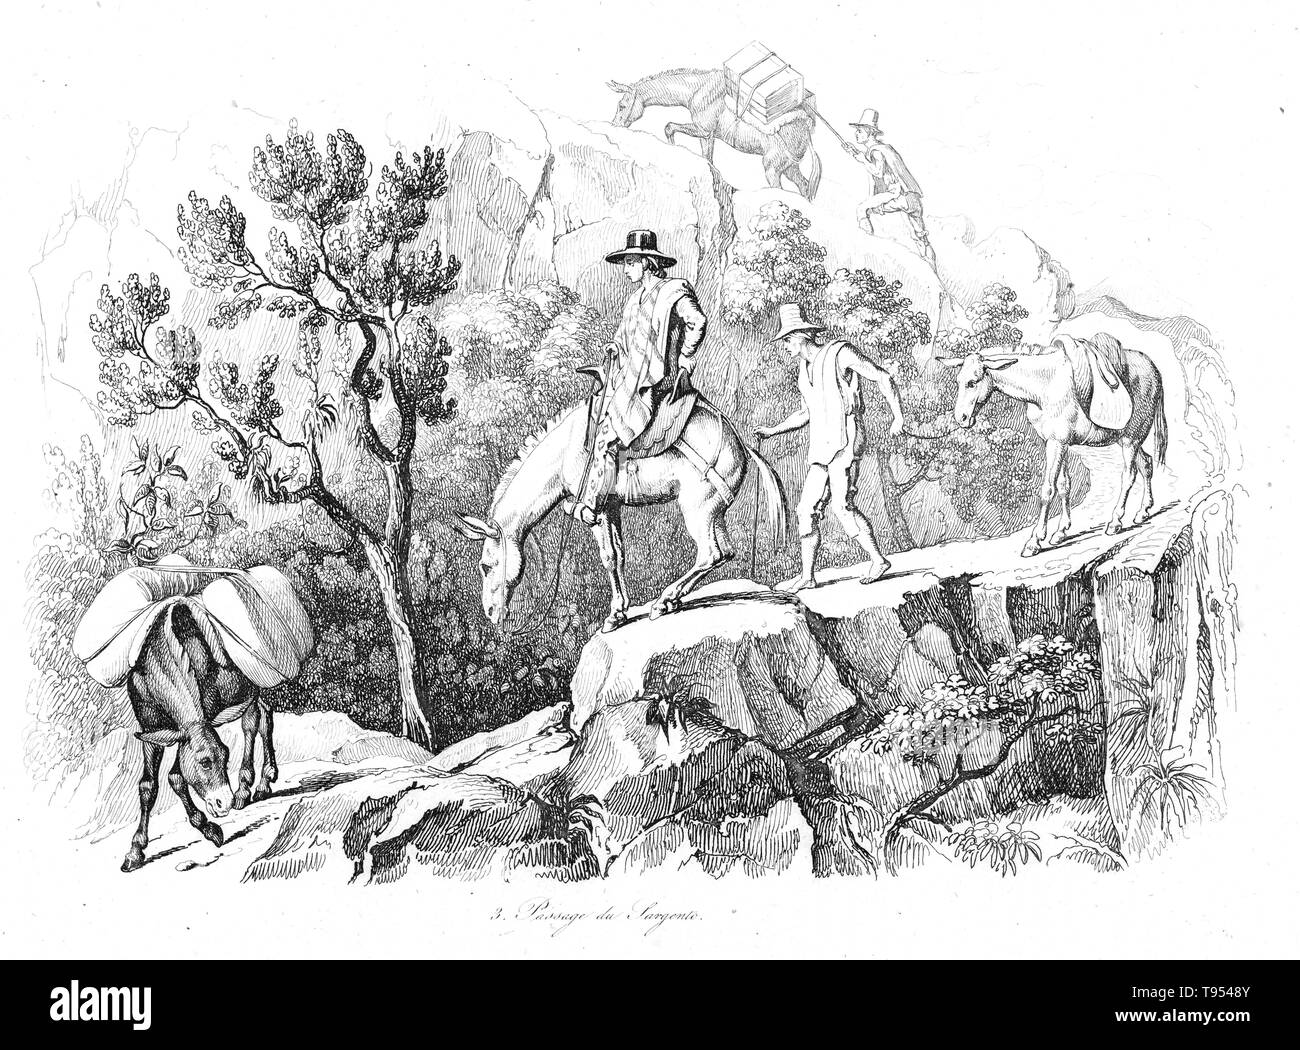 Die Entdecker und Naturforscher Alexander von Humboldt Reisen auf Maultieren in den Anden. Humboldt (1769-1859) war ein preußischer Geograph, Naturforscher und Entdecker. Seine quantitative Arbeit auf botanische Geographie legte den Grundstein für das Feld der Biogeographie. Zwischen 1799 und 1804, Humboldt reiste in Lateinamerika, untersuchen und beschreiben Sie zum ersten Mal in einer Art und Weise, in der Regel als eine moderne wissenschaftliche Punkt zu sein. Stockfoto